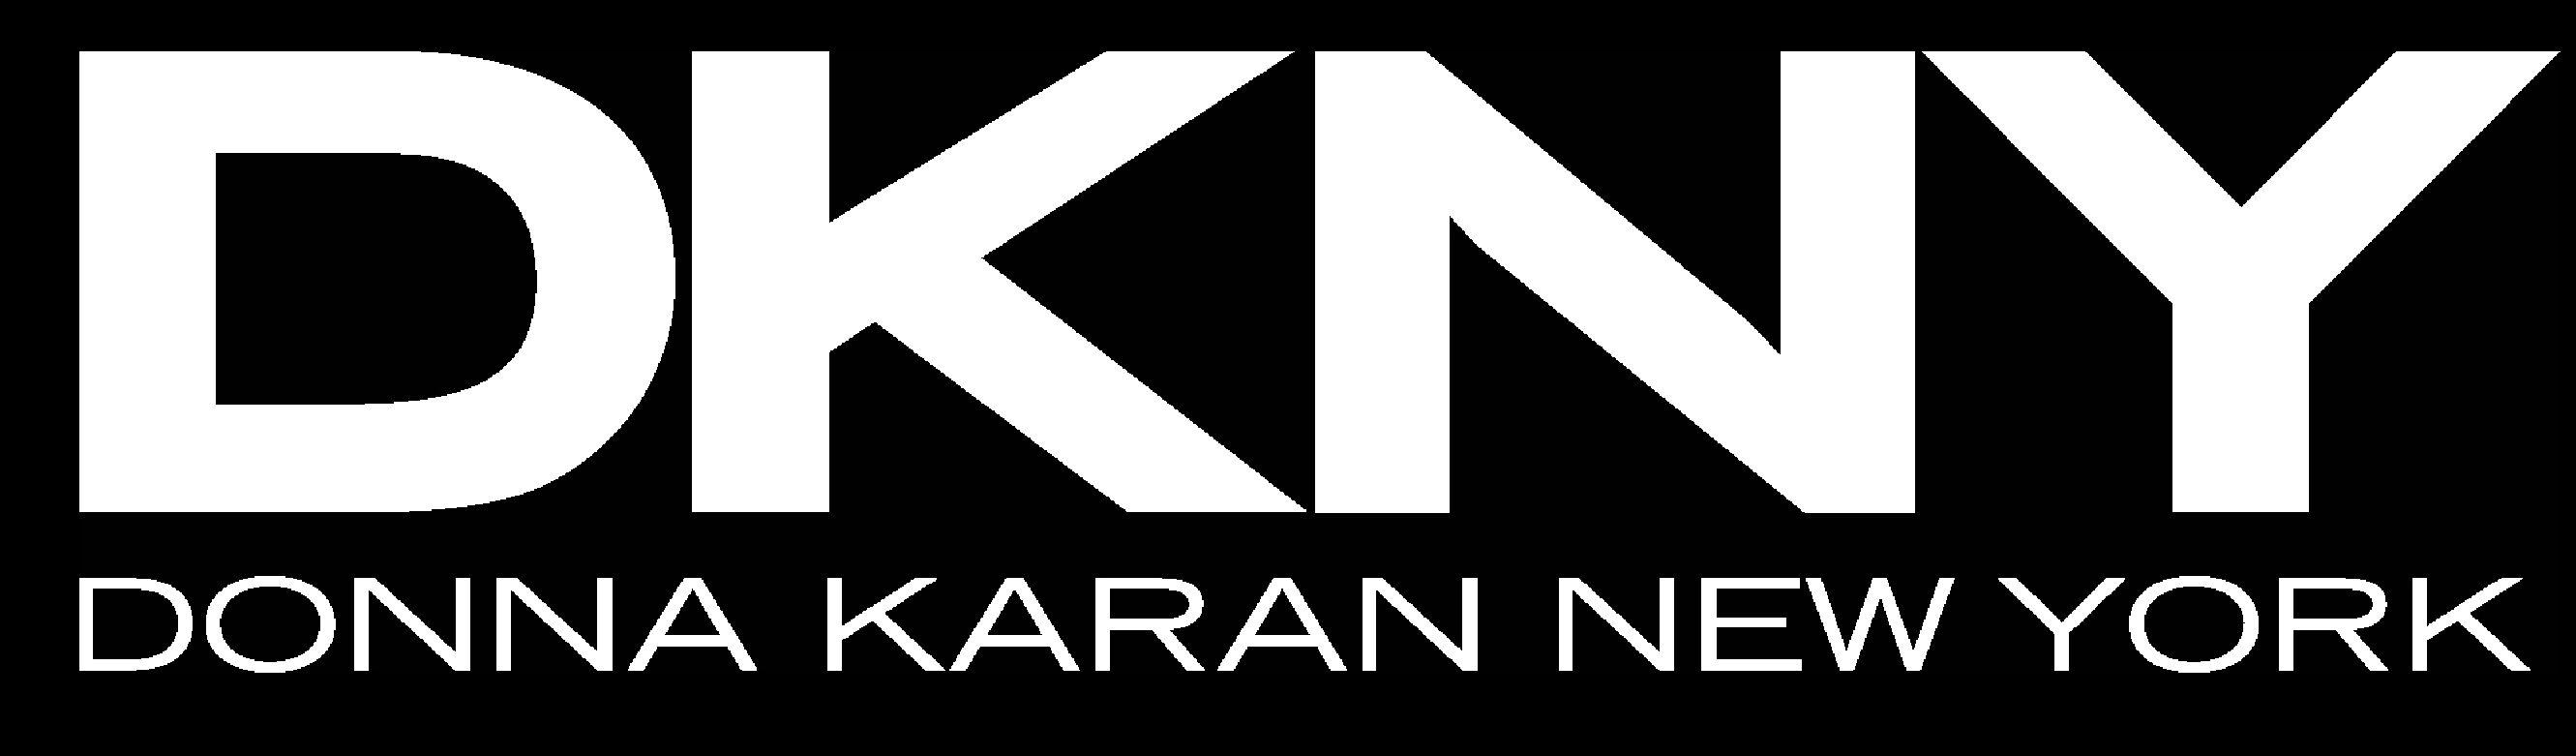 DKNY Logo - Dkny Logos